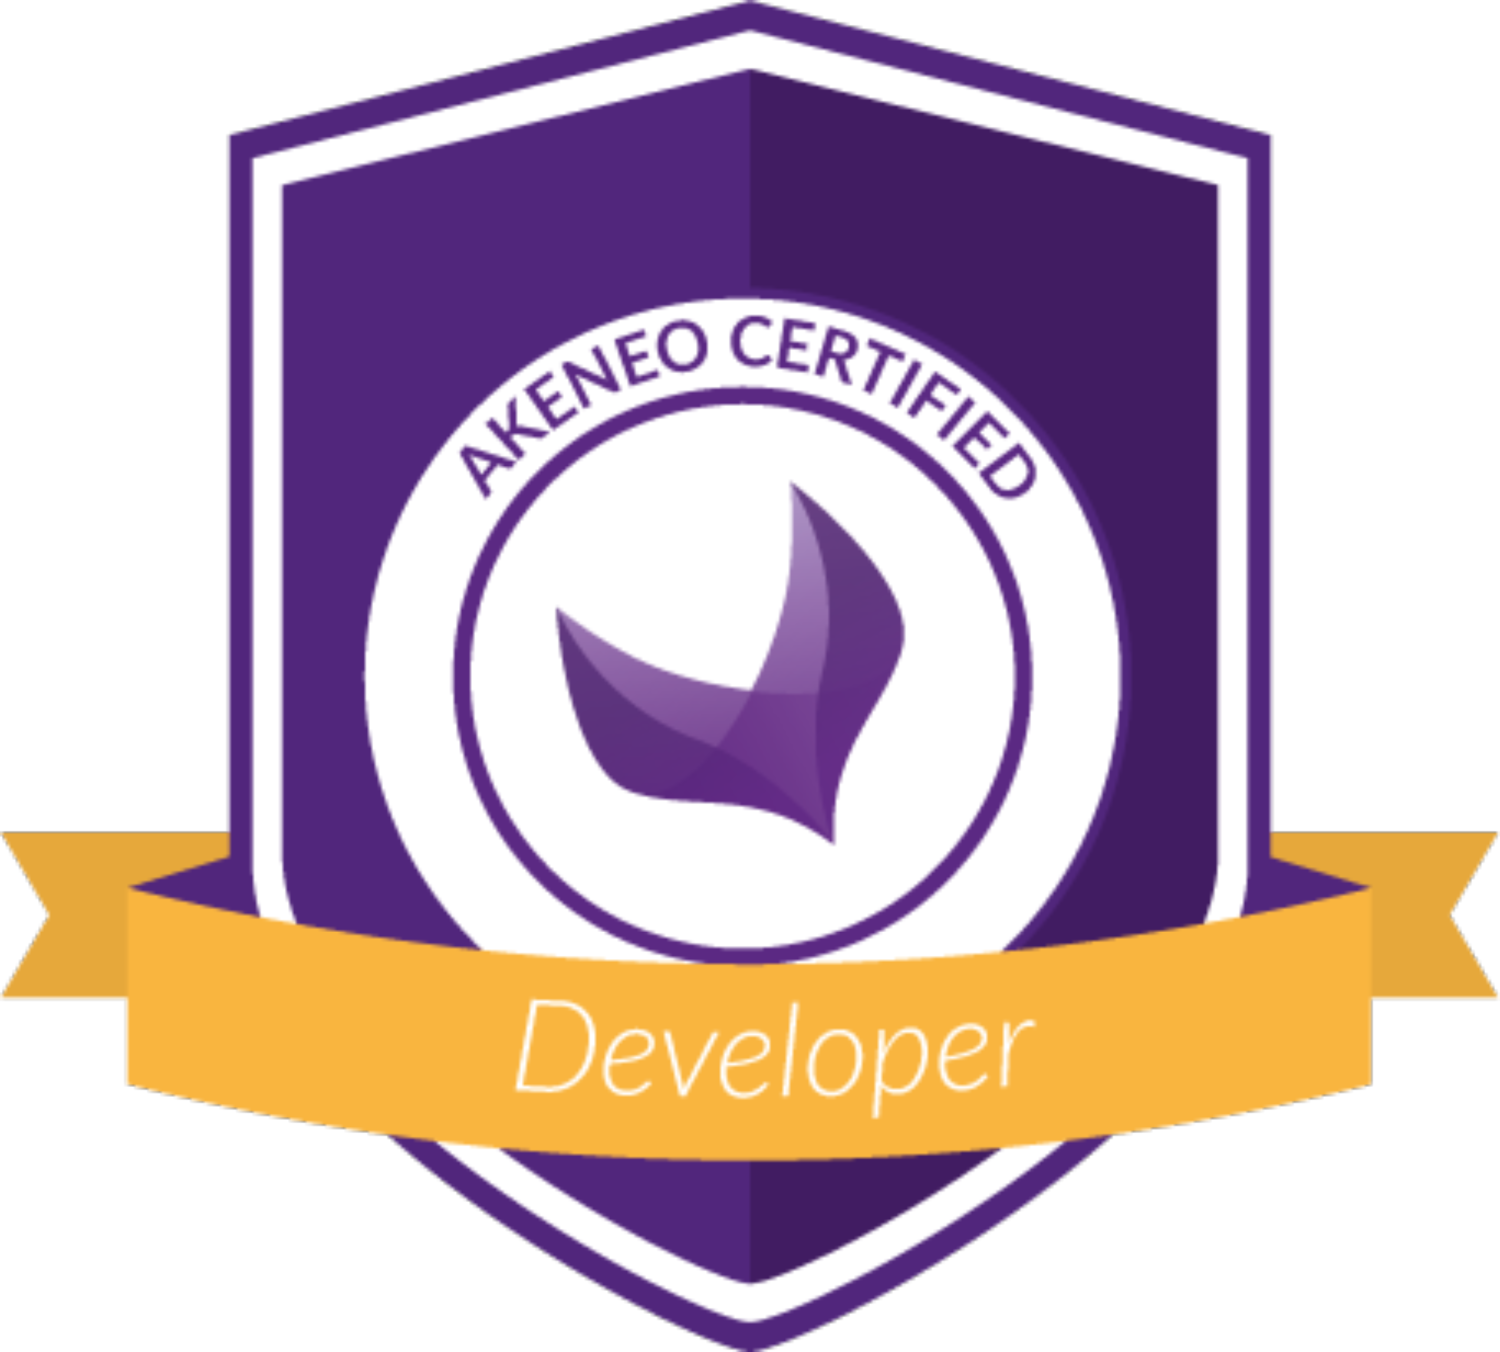 akeneo certified developer